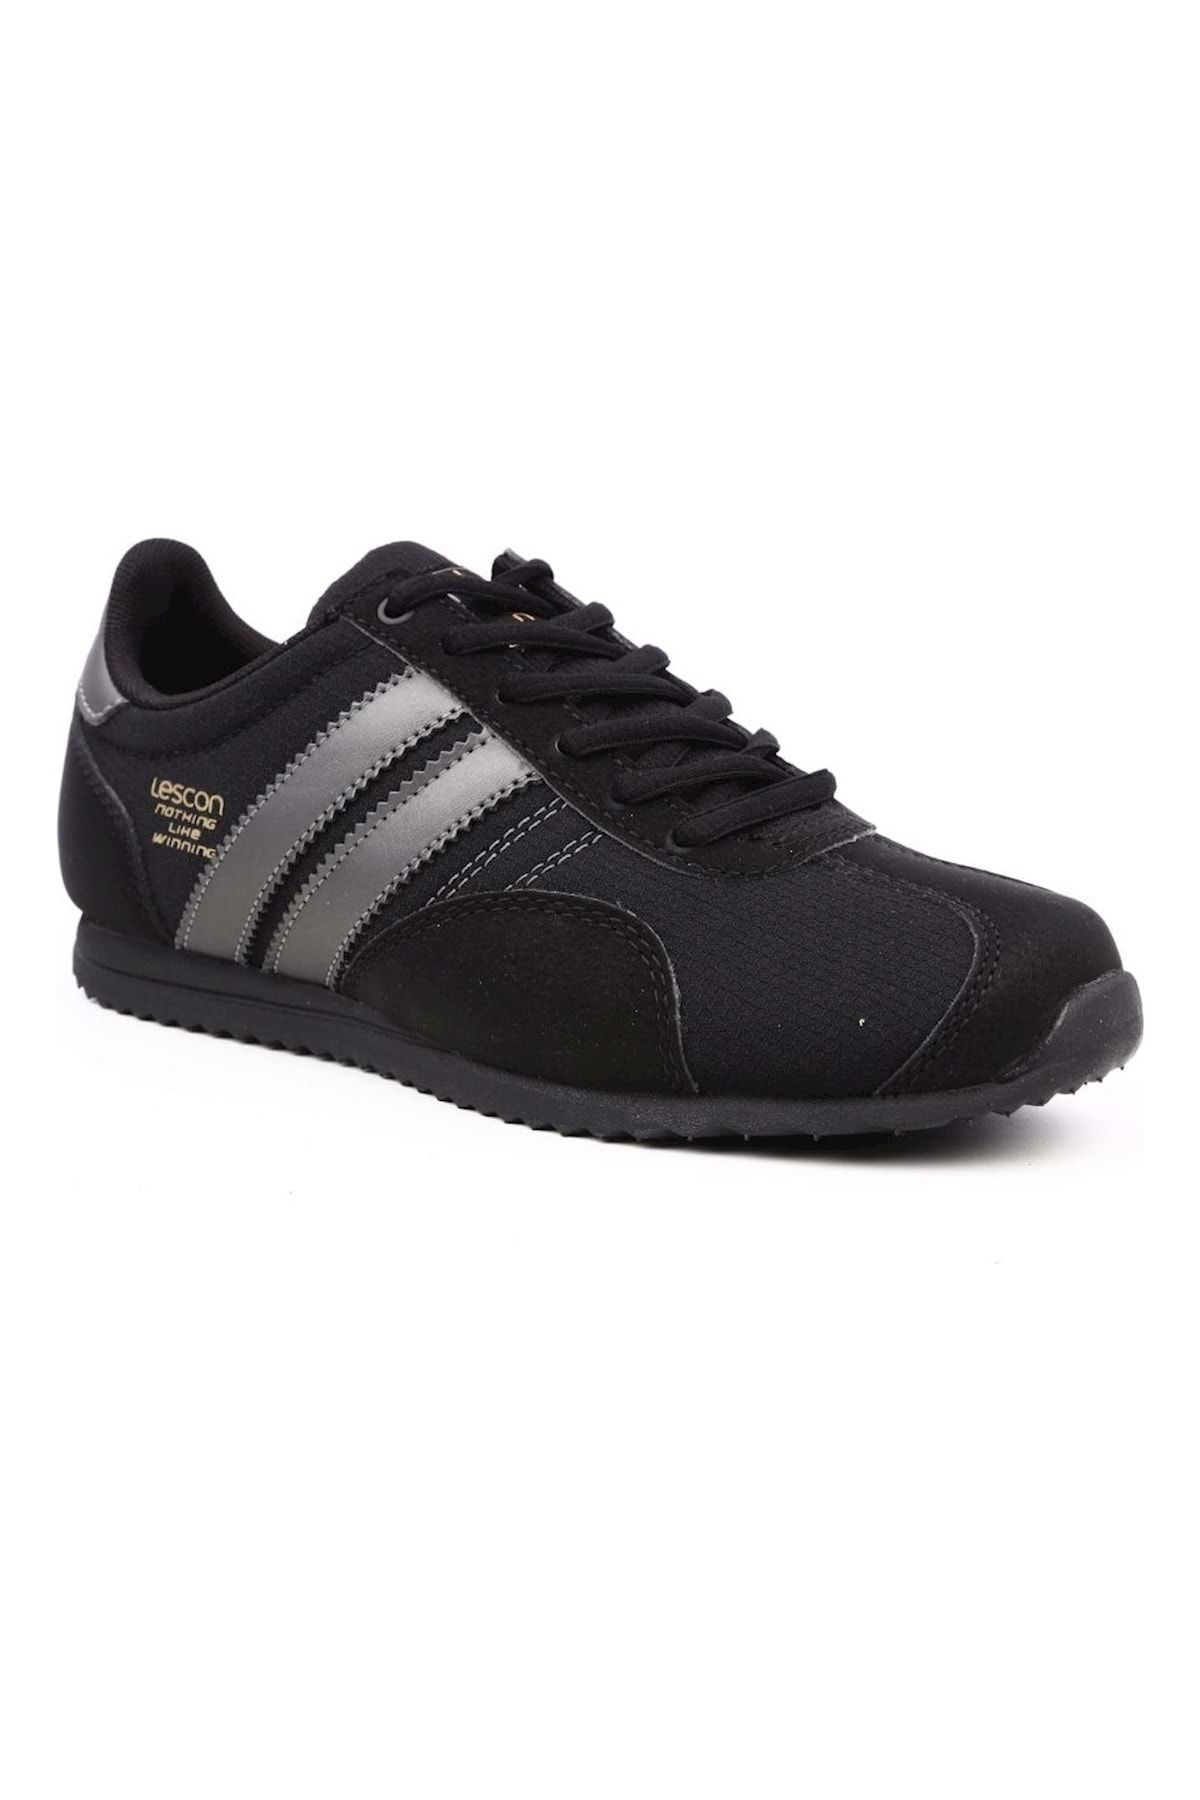 Lescon Unisex Siyah Bağcıklı Sneaker Ayakkabı  6615